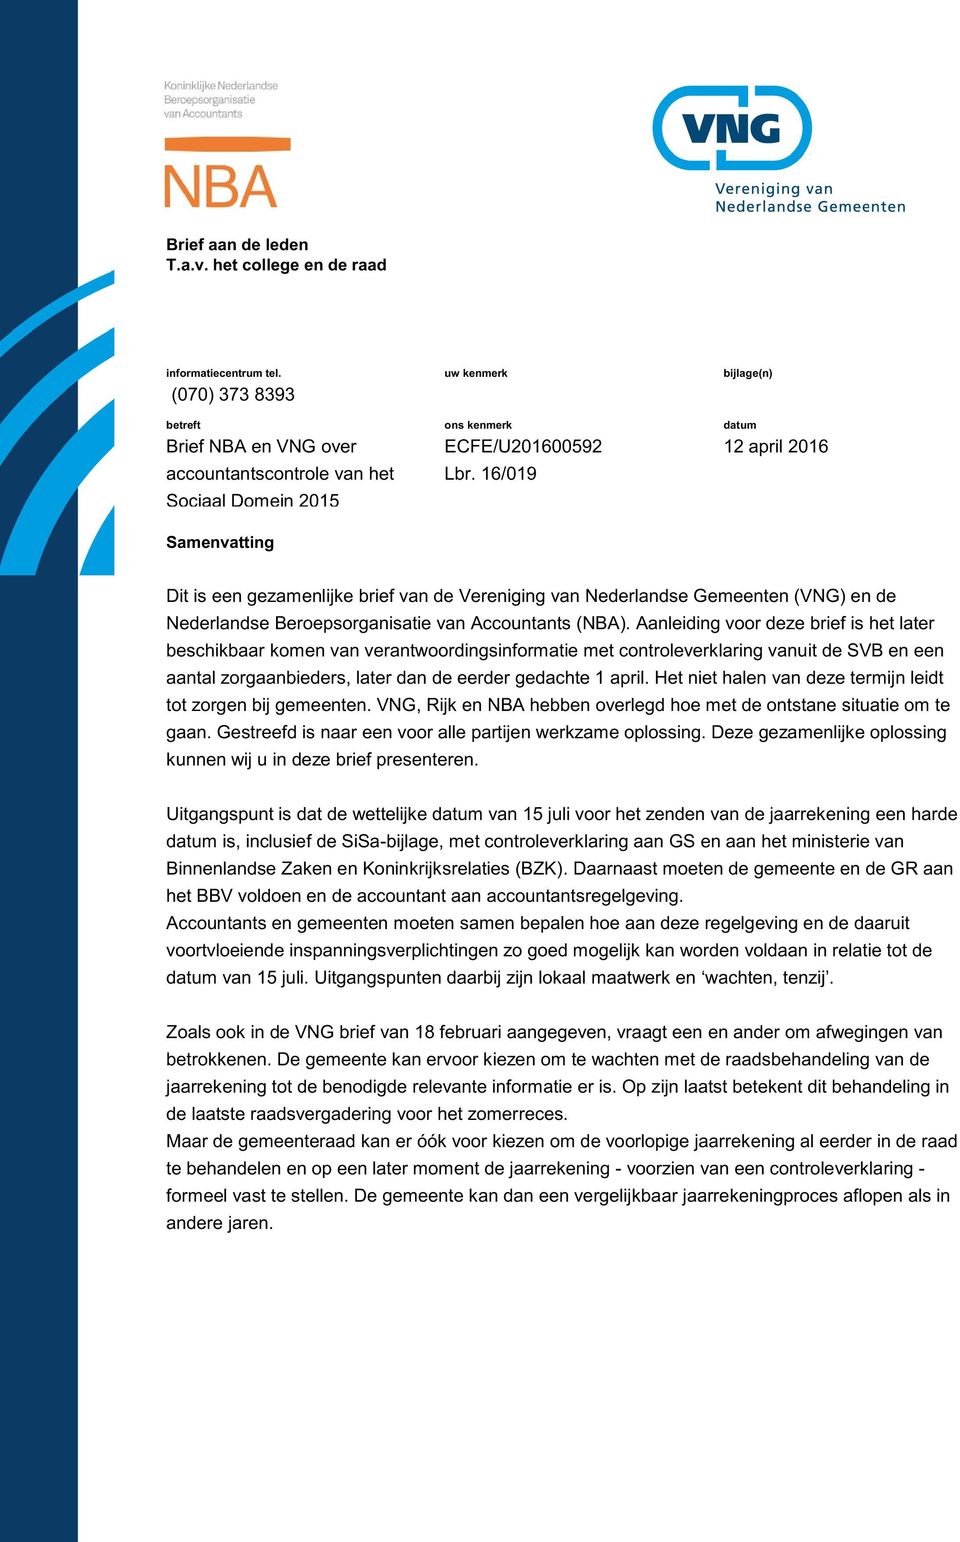 16/019 bijlage(n) datum 12 april 2016 Dit is een gezamenlijke brief van de Vereniging van Nederlandse Gemeenten (VNG) en de Nederlandse Beroepsorganisatie van Accountants (NBA).